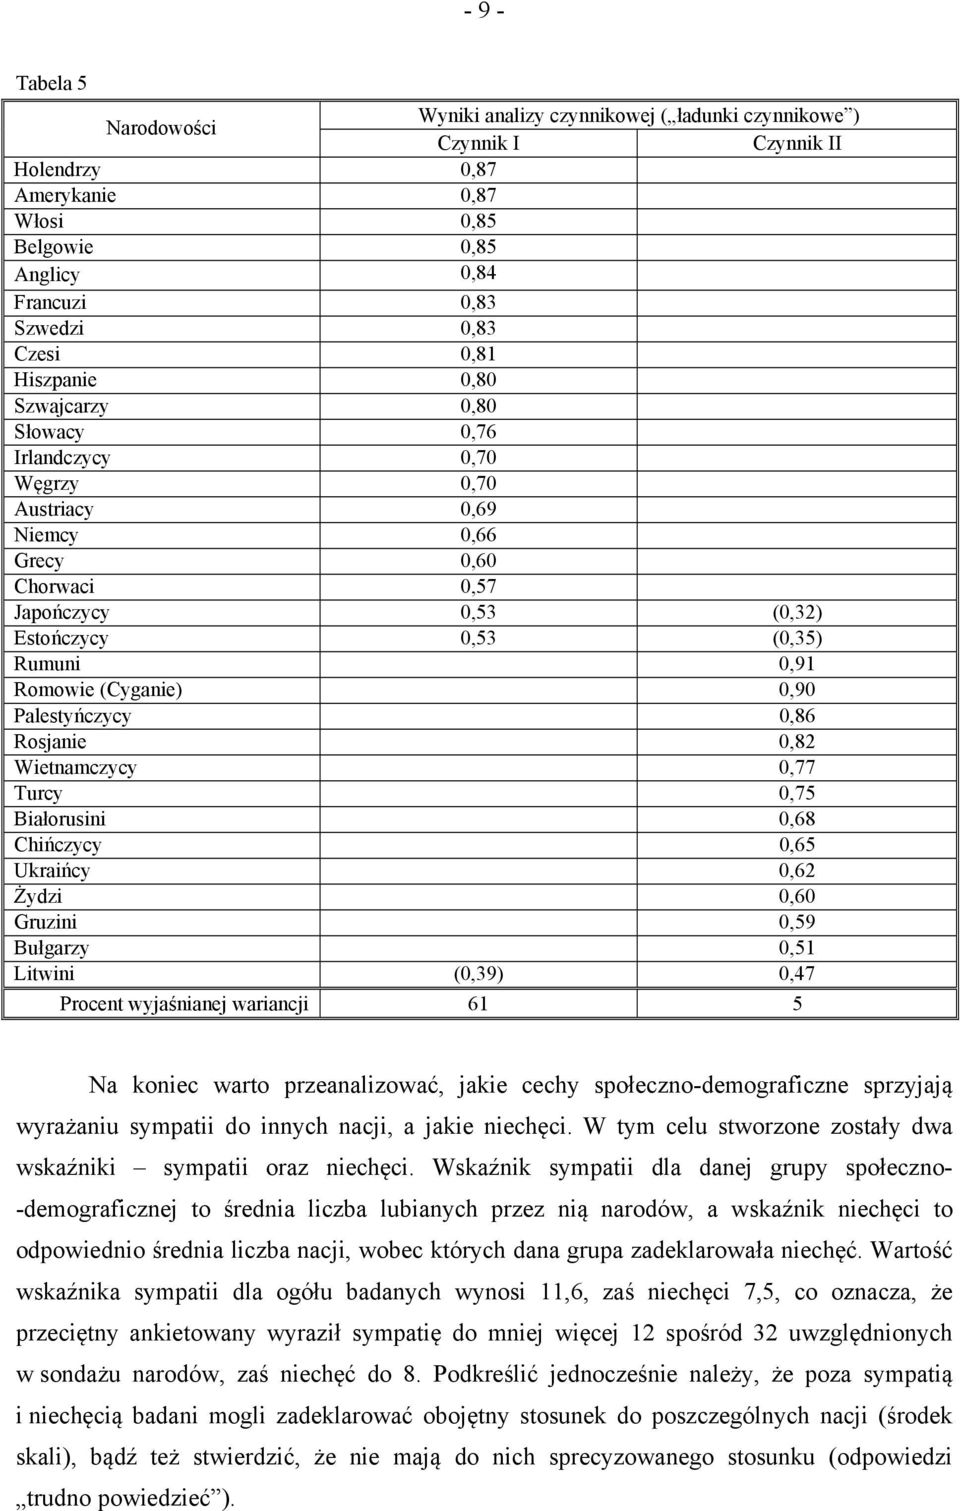 (Cyganie) 0,90 Palestyńczycy 0,86 Rosjanie 0,82 Wietnamczycy 0,77 Turcy 0,75 Białorusini 0,68 Chińczycy 0,65 Ukraińcy 0,62 Żydzi 0,60 Gruzini 0,59 Bułgarzy 0,51 Litwini (0,39) 0,47 Procent